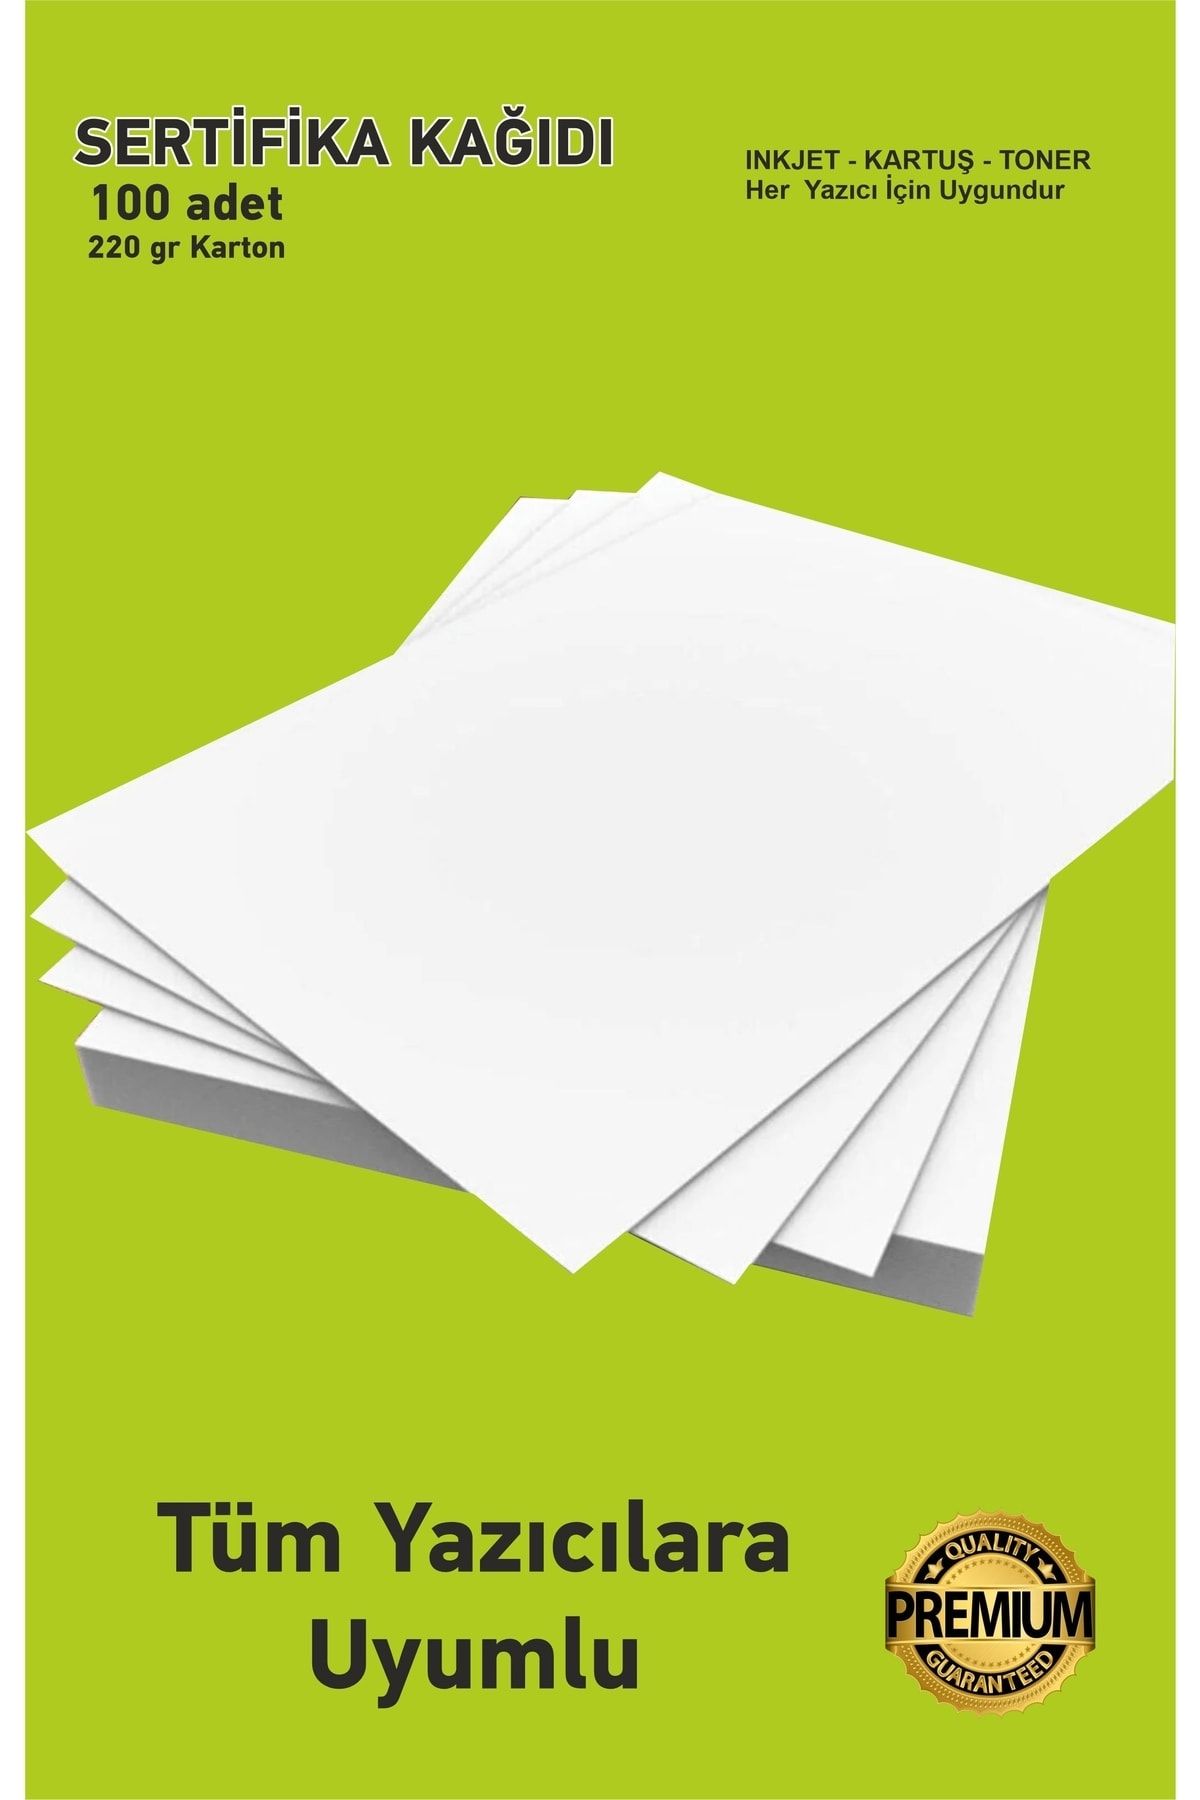 Hsn Kartuşlu Mürekkepli Tüm Yazıcılara Uygun 100 Adet Kalın A4 Sertifika Vb Için 220 gr Kağıt